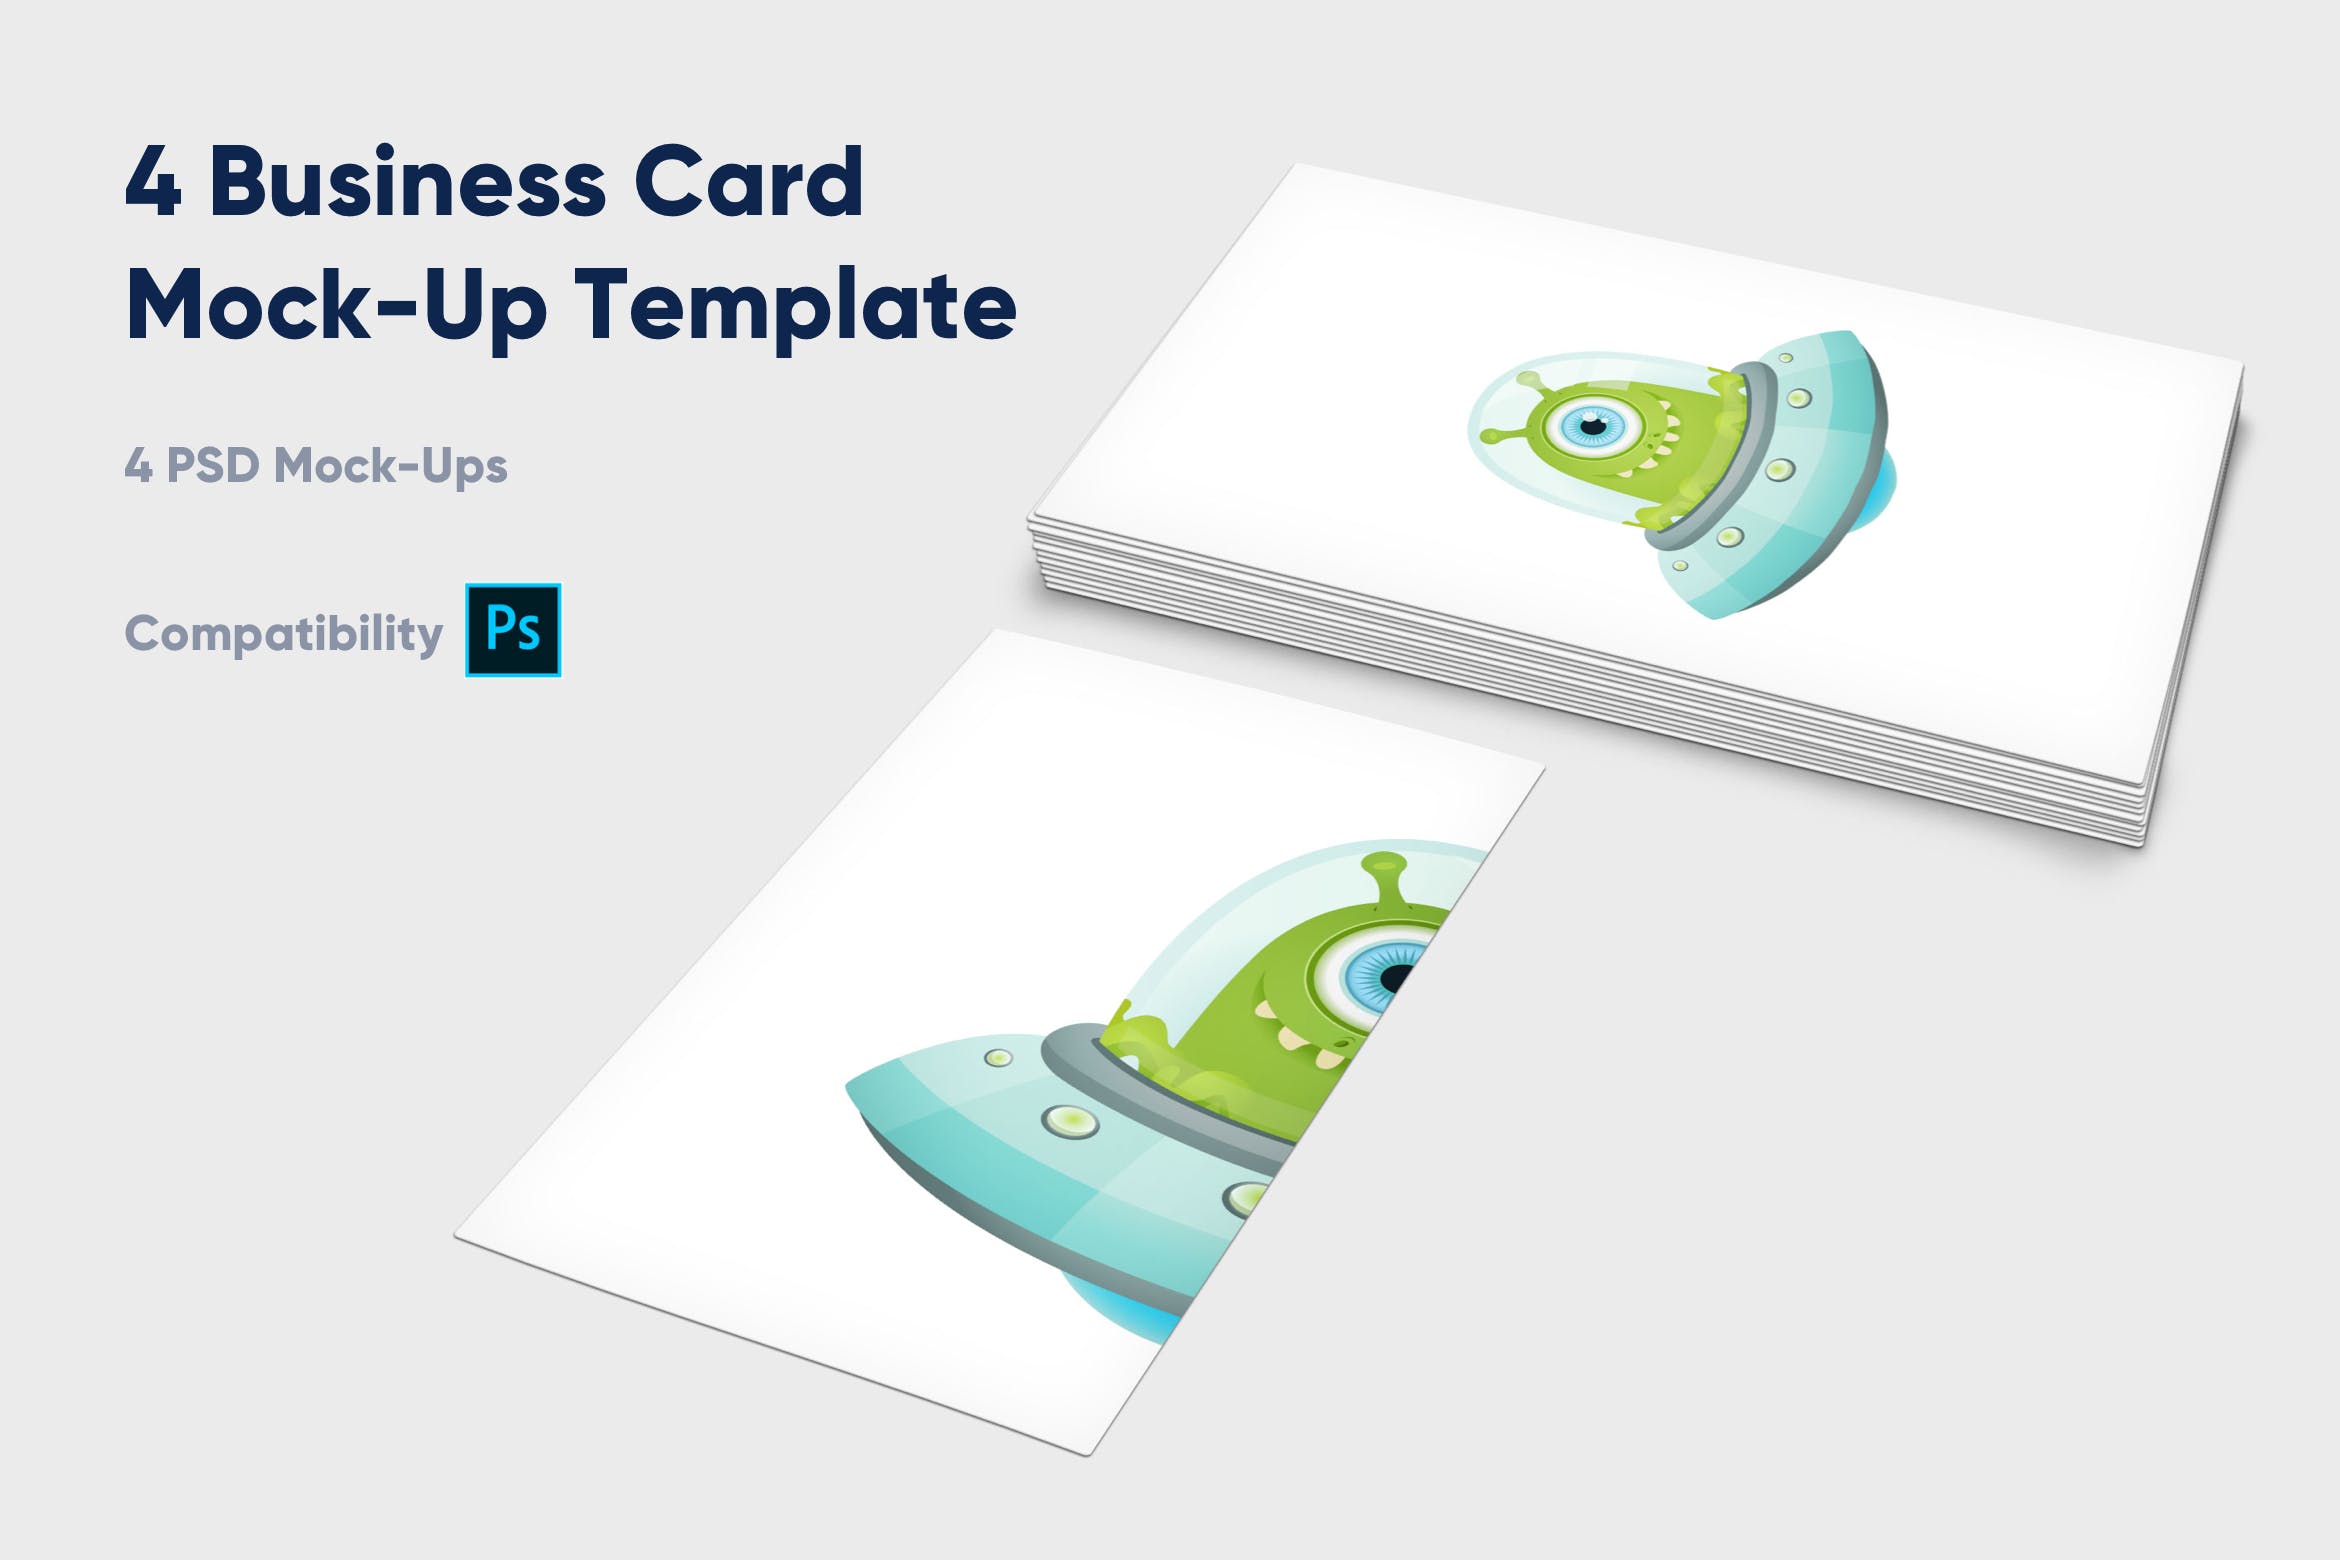 企业名片设计效果图展示样机非凡图库精选模板 4 Business Card Mock-Up Template插图